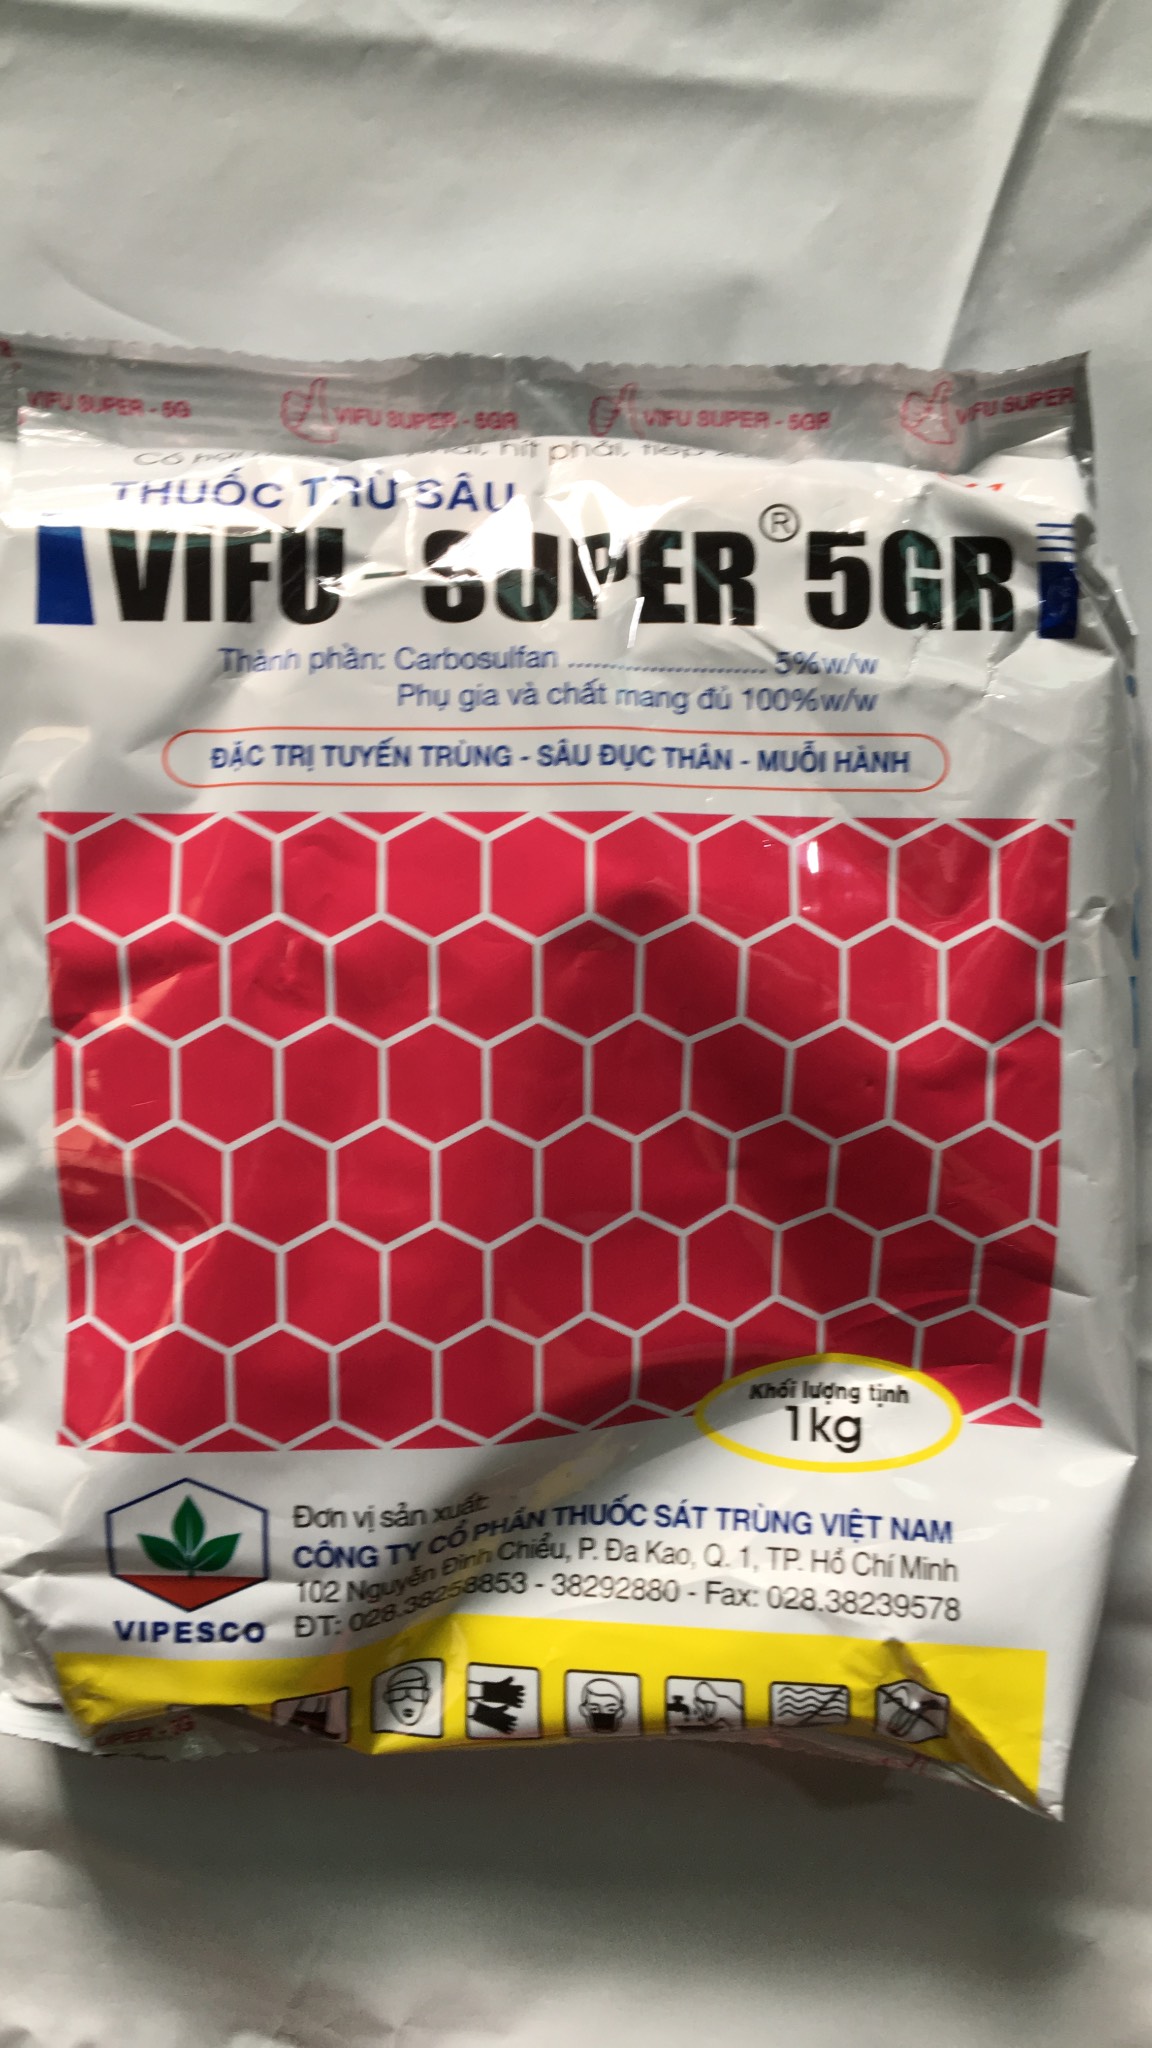 sản phẩm VIFU SUPER 5GR Phòng trừ tuyến trùng sùng đất rải gốc cây trồng gói 1kg